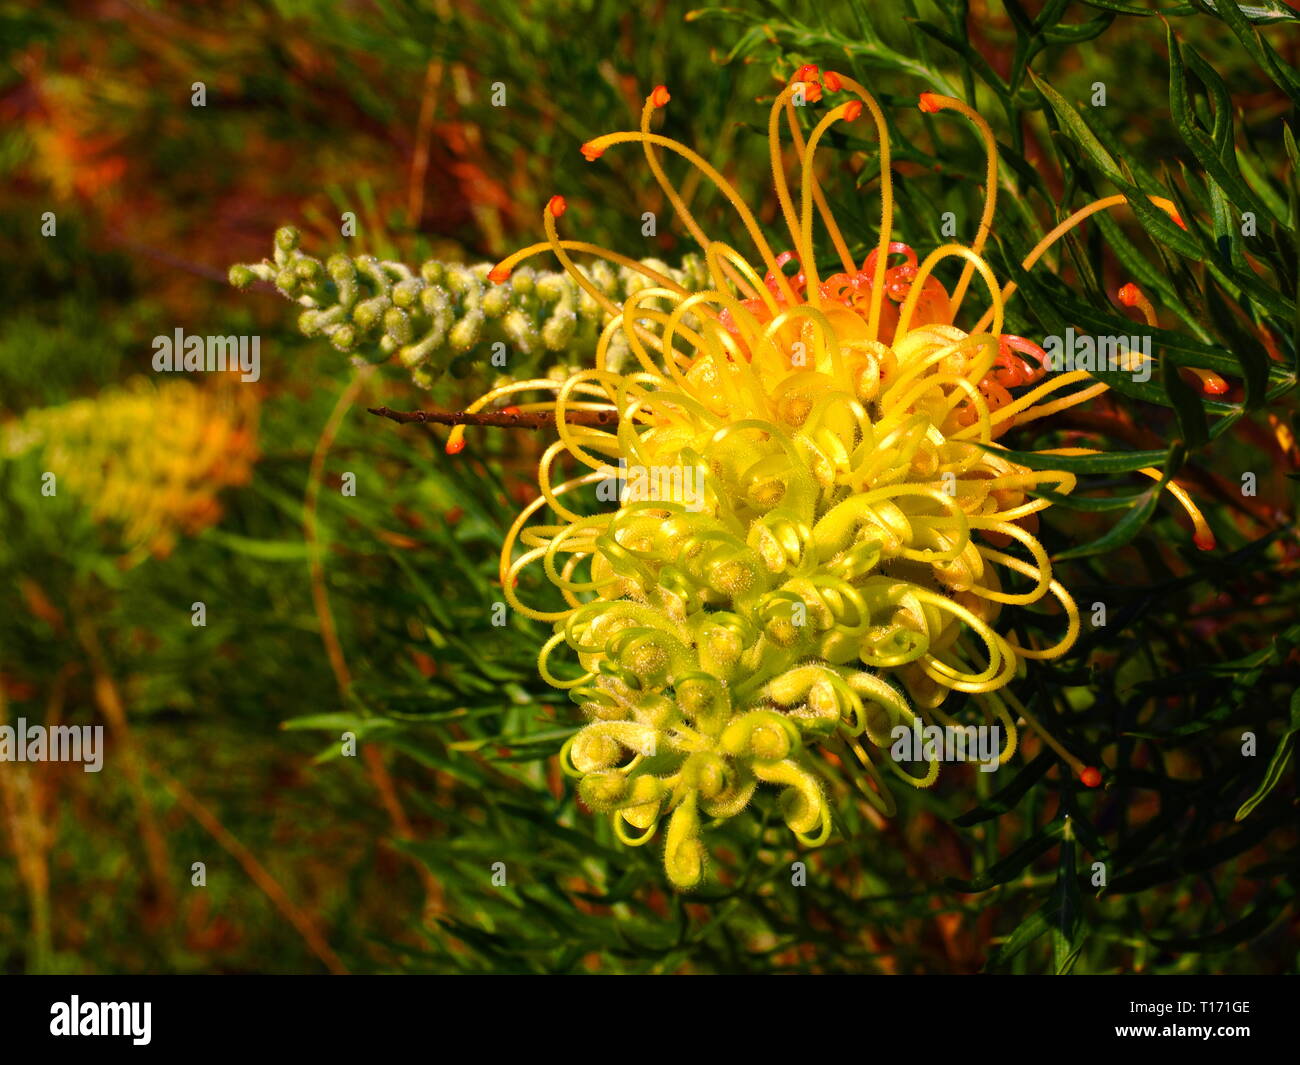 Grevillea Blumen. Gelb und rosa Blütenblätter der australischen Ureinwohner Grevillea Pflanze in Blüte. Wilde Vögel sind zu diesen Blumen angezogen. Stockfoto